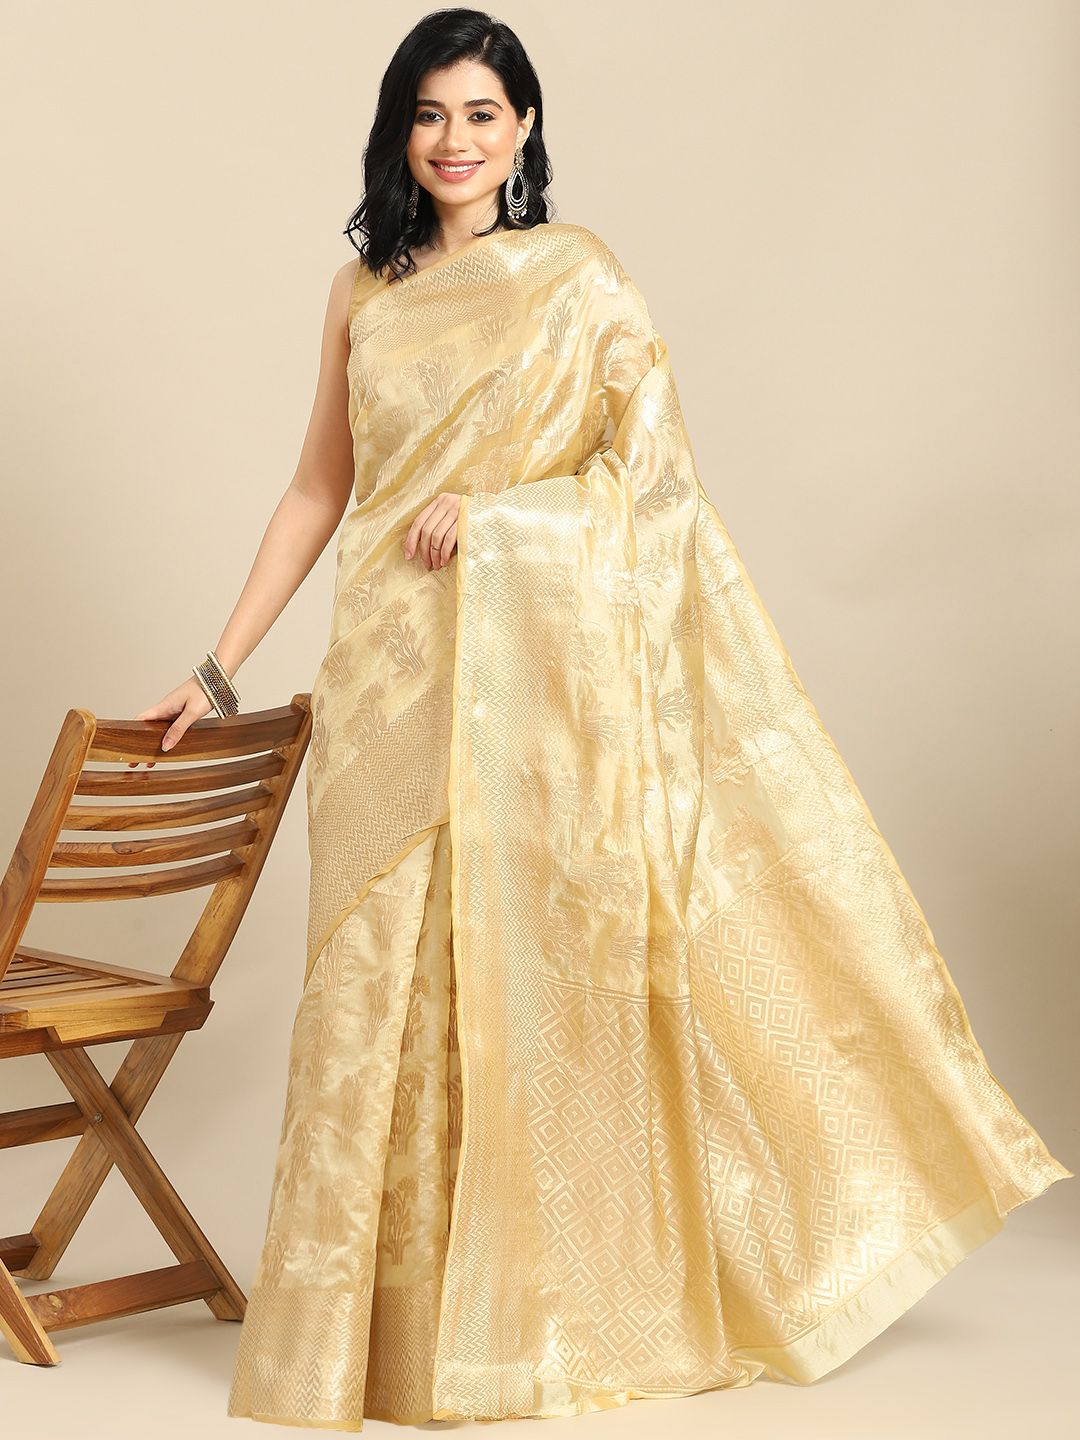 all about you Cream-Coloured & Golden Woven Design Banarasi Organza Saree Price in India